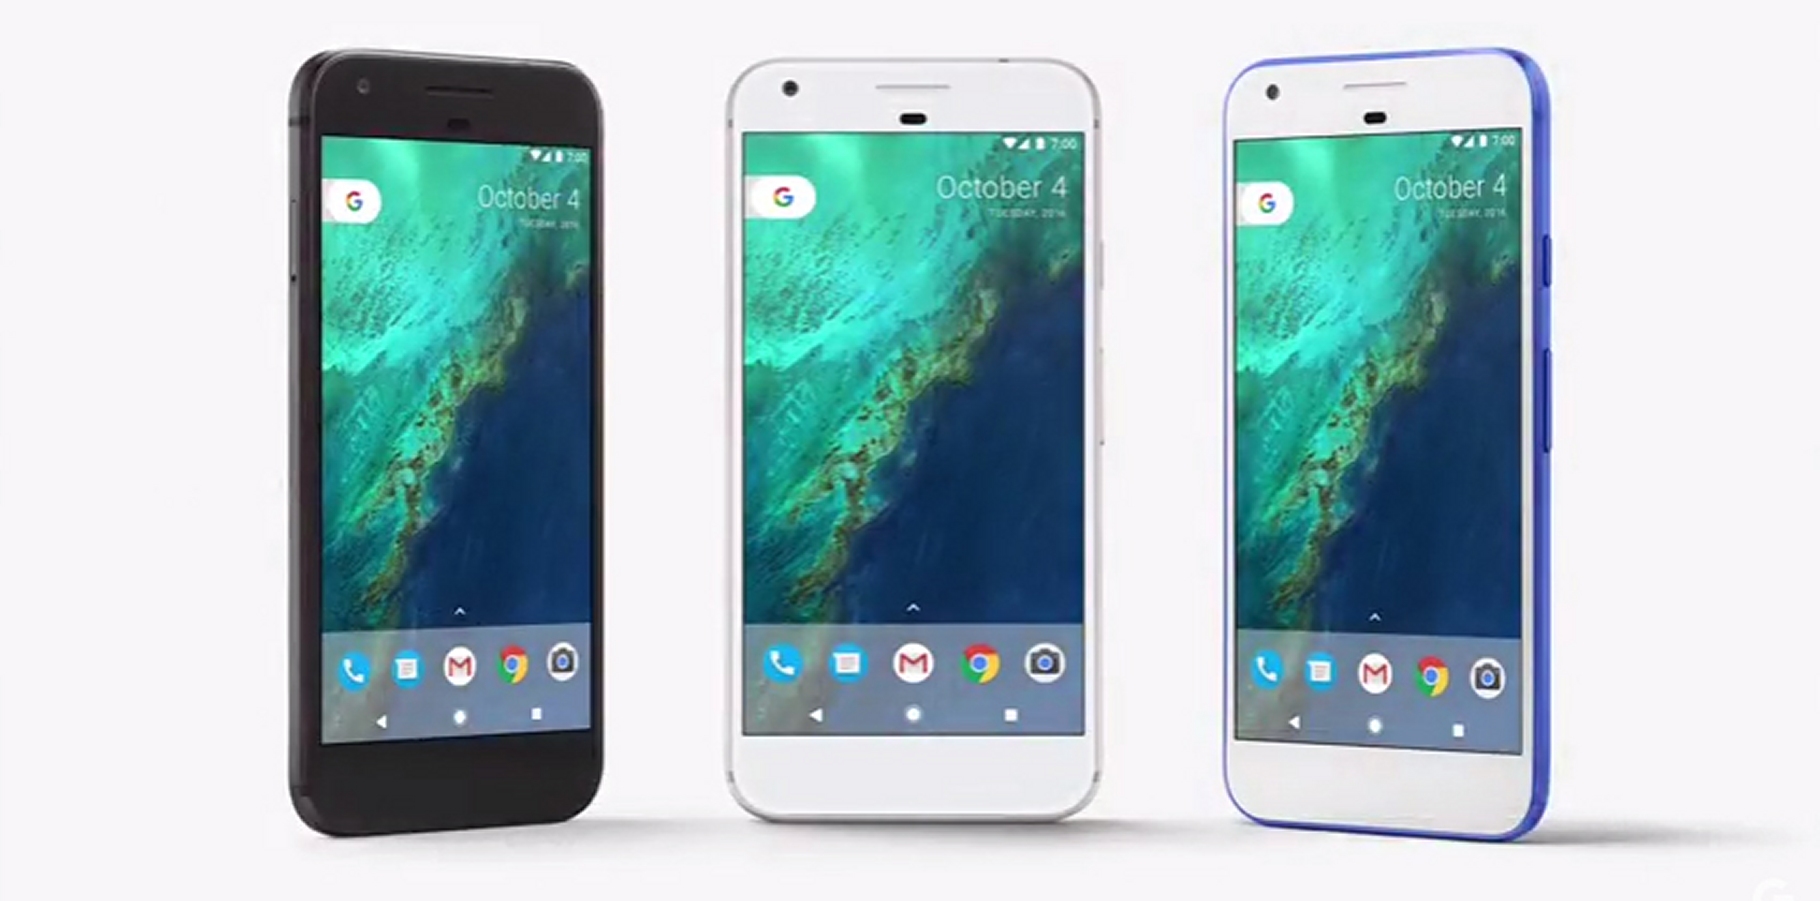 Le téléphone Pixel, conçu par Google et vendu sous sa marque, est un modèle haut de gamme, présenté le 4 octobre 2016. © Google